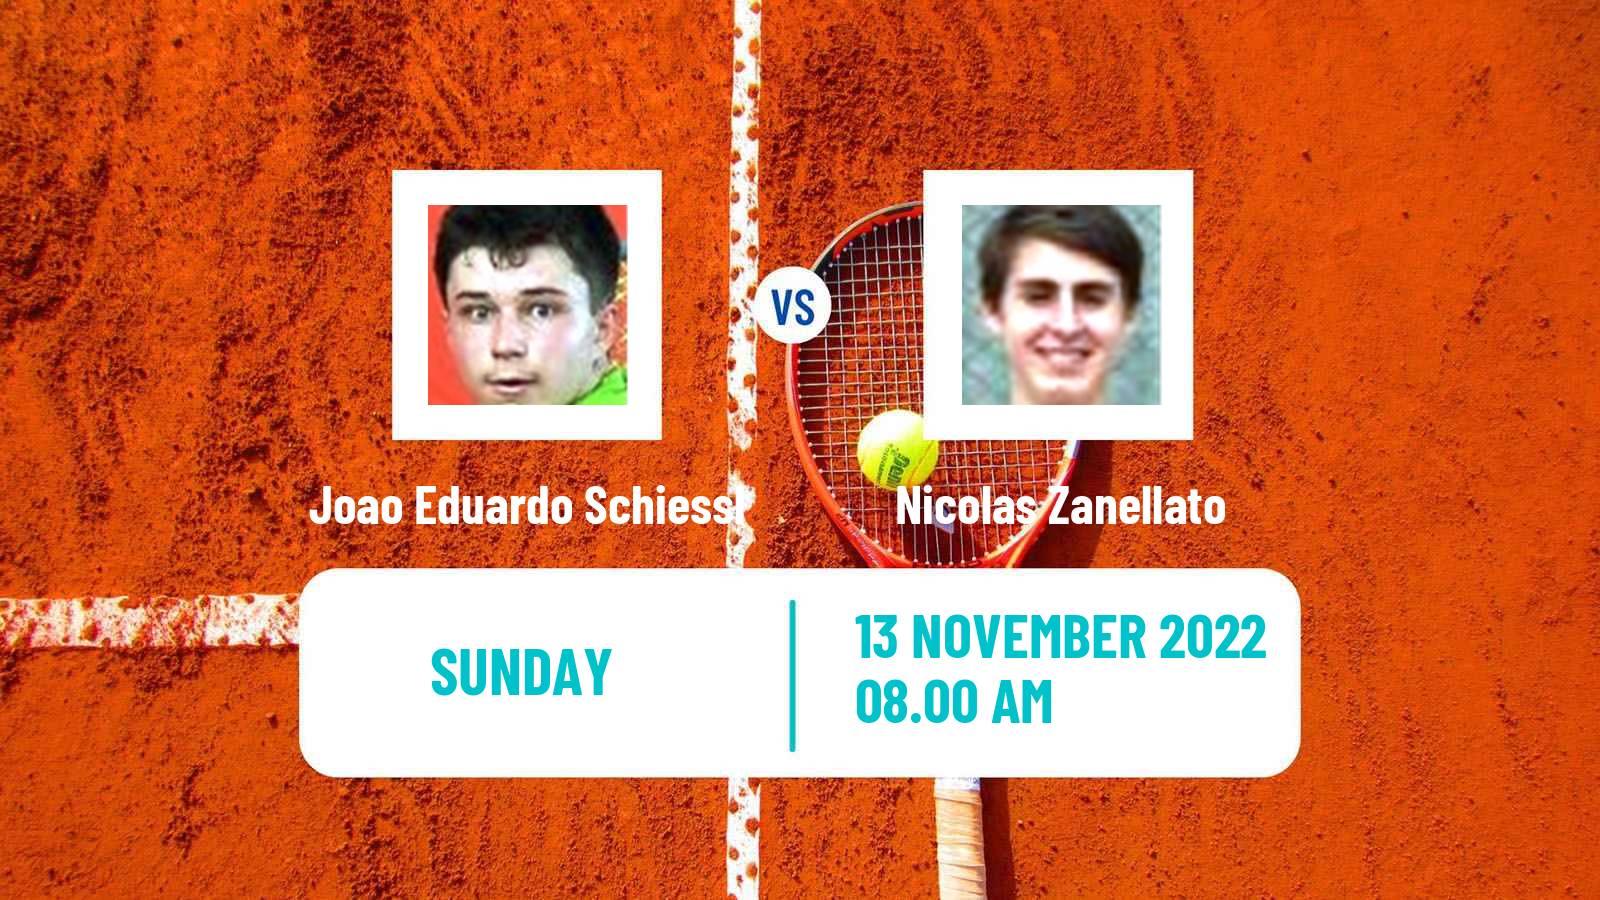 Tennis ATP Challenger Joao Eduardo Schiessl - Nicolas Zanellato